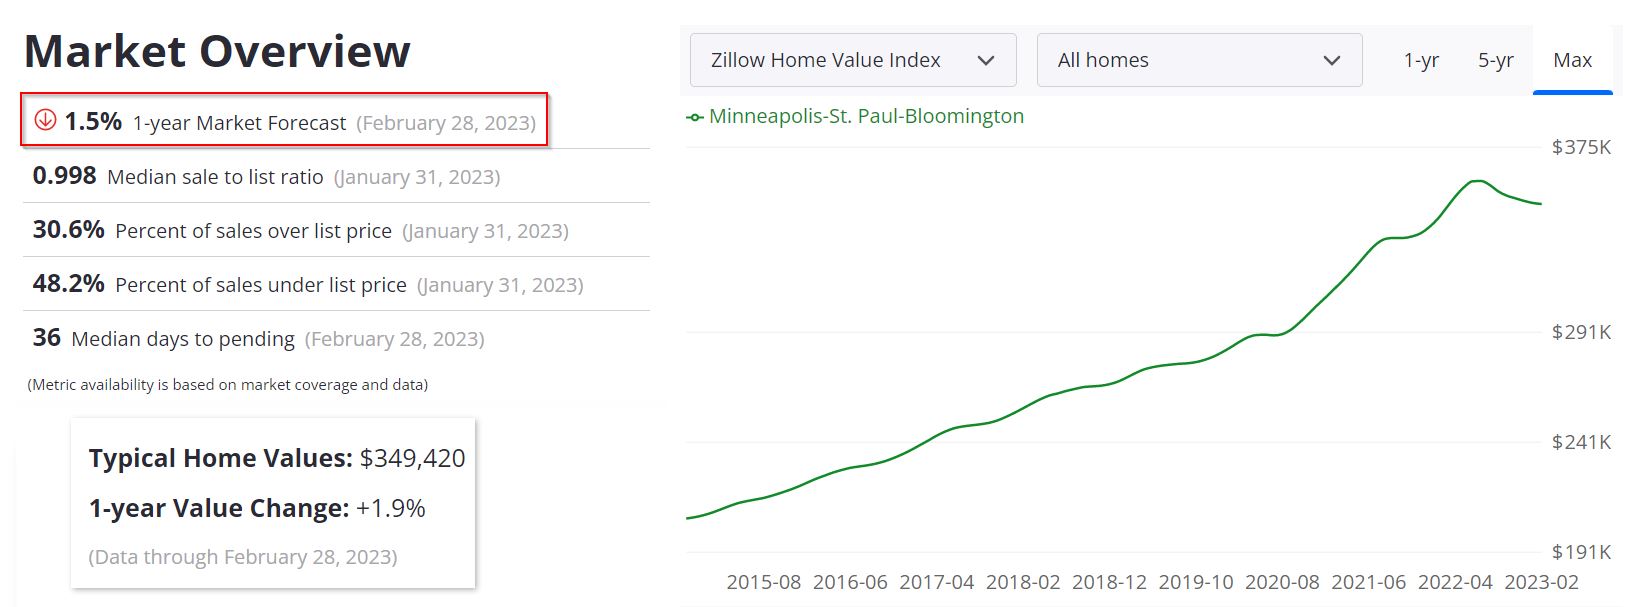 Minneapolis Housing Market Forecast